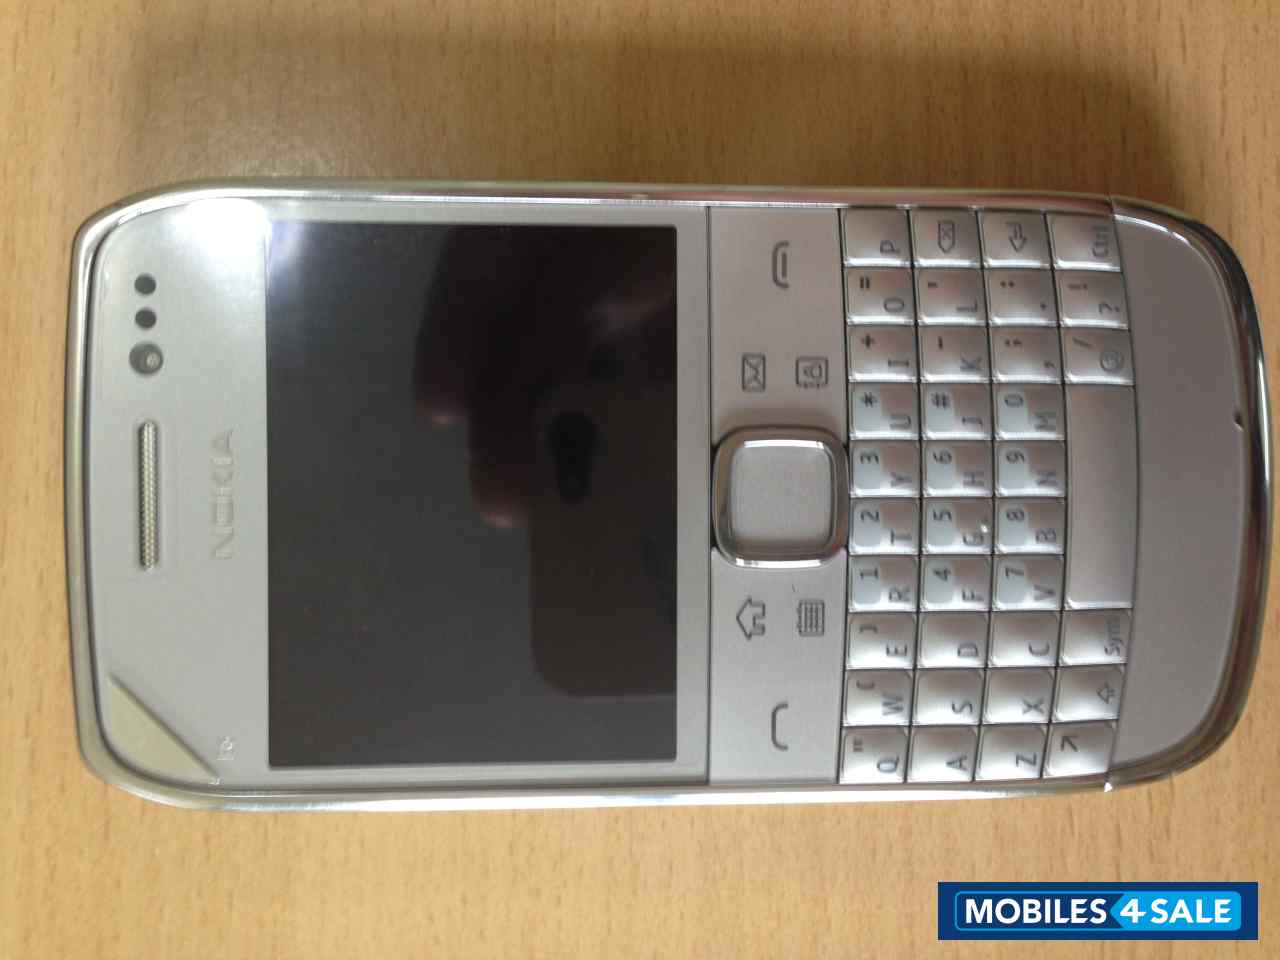 Silver Nokia E6 Touch n Type